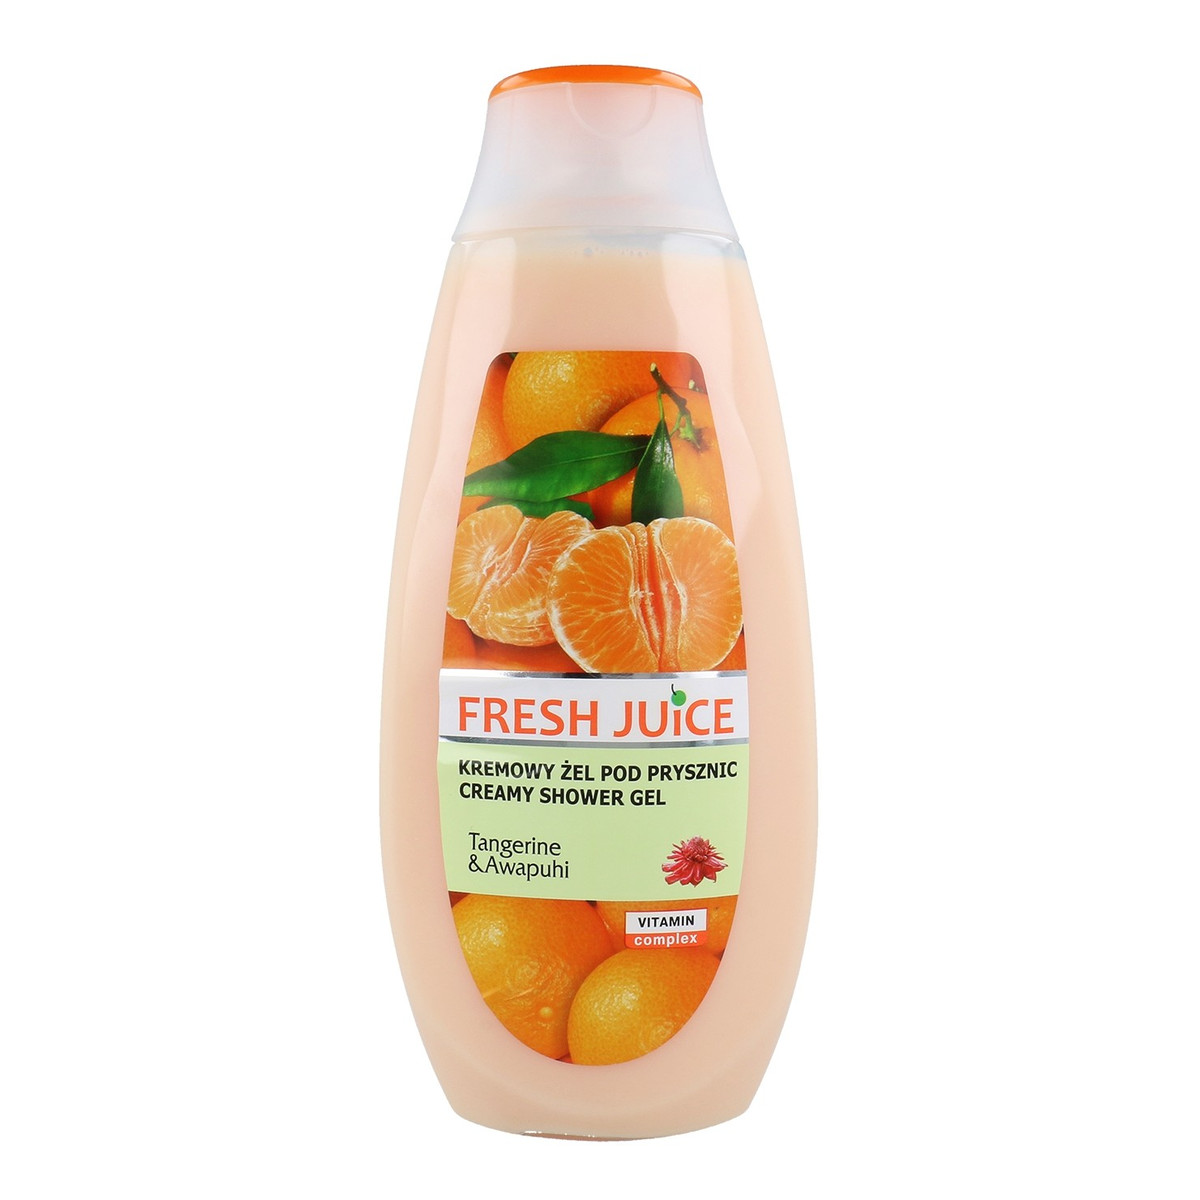 Fresh Juice Kremowy Żel Pod Prysznic O Zapachu Tangerine & Awapuhi Mandarynki I Awapuhi 400ml